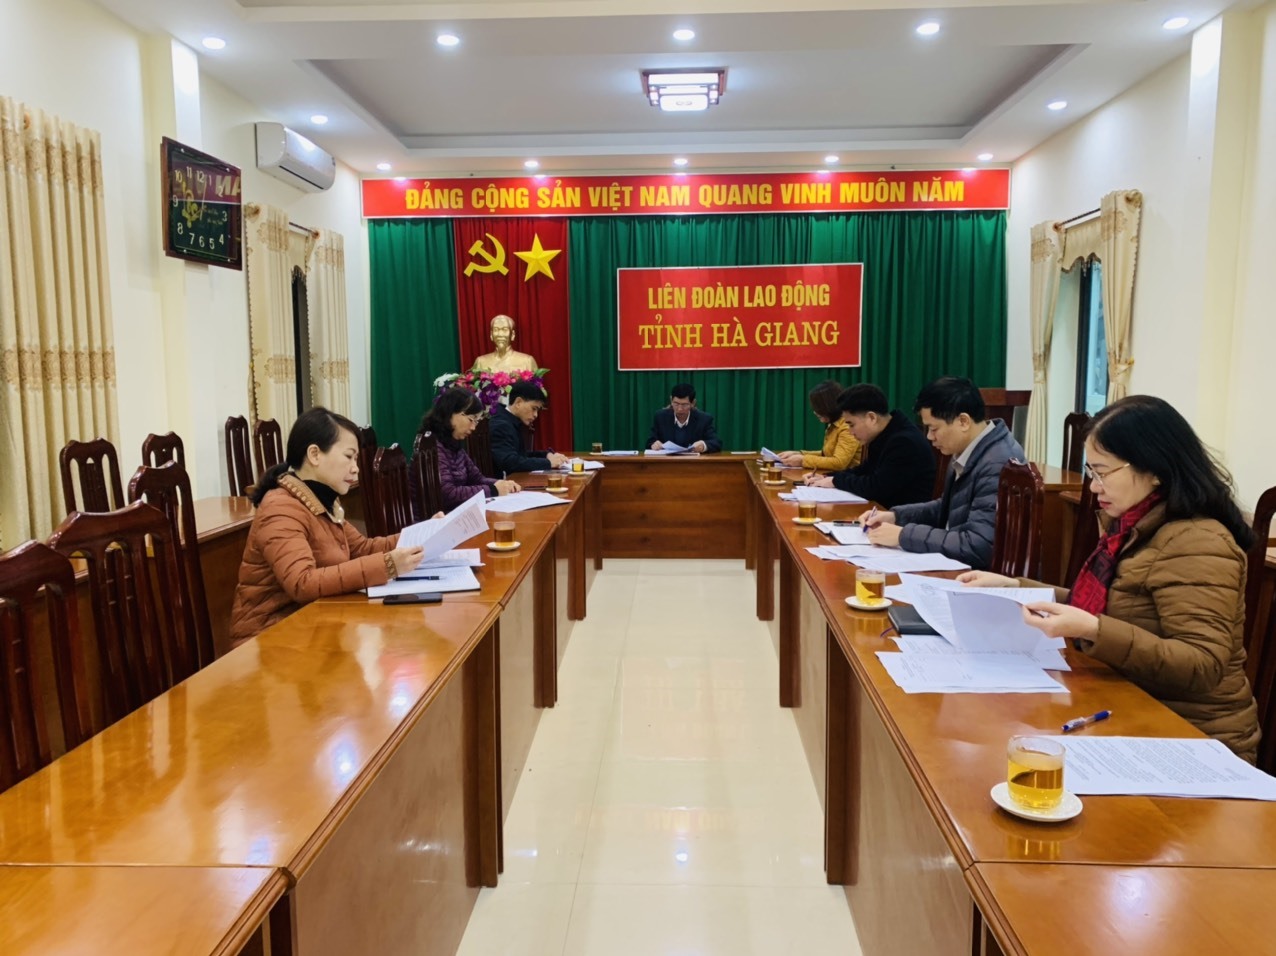 Liên đoàn Lao động tỉnh Hà Giang họp triển khai chuẩn bị các nội dung Chương trình Chợ Tết Công đoàn năm 2023. Ảnh: Hà Phương